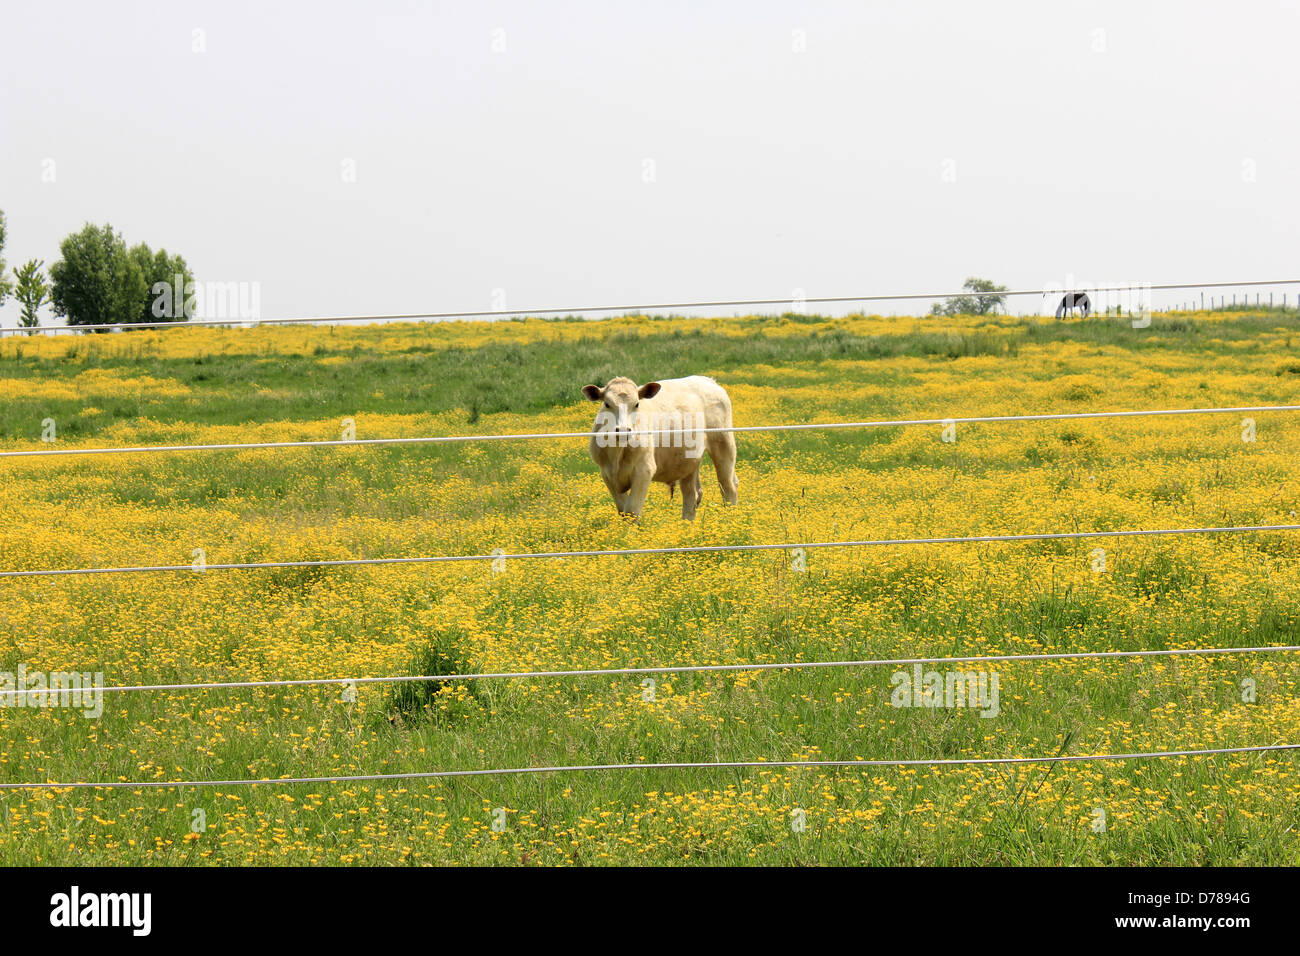 Une seule vache, debout près de clôtures métalliques sur le bord de ferme avec terrain de renoncule jaune vif,fait une scène paisible. Banque D'Images